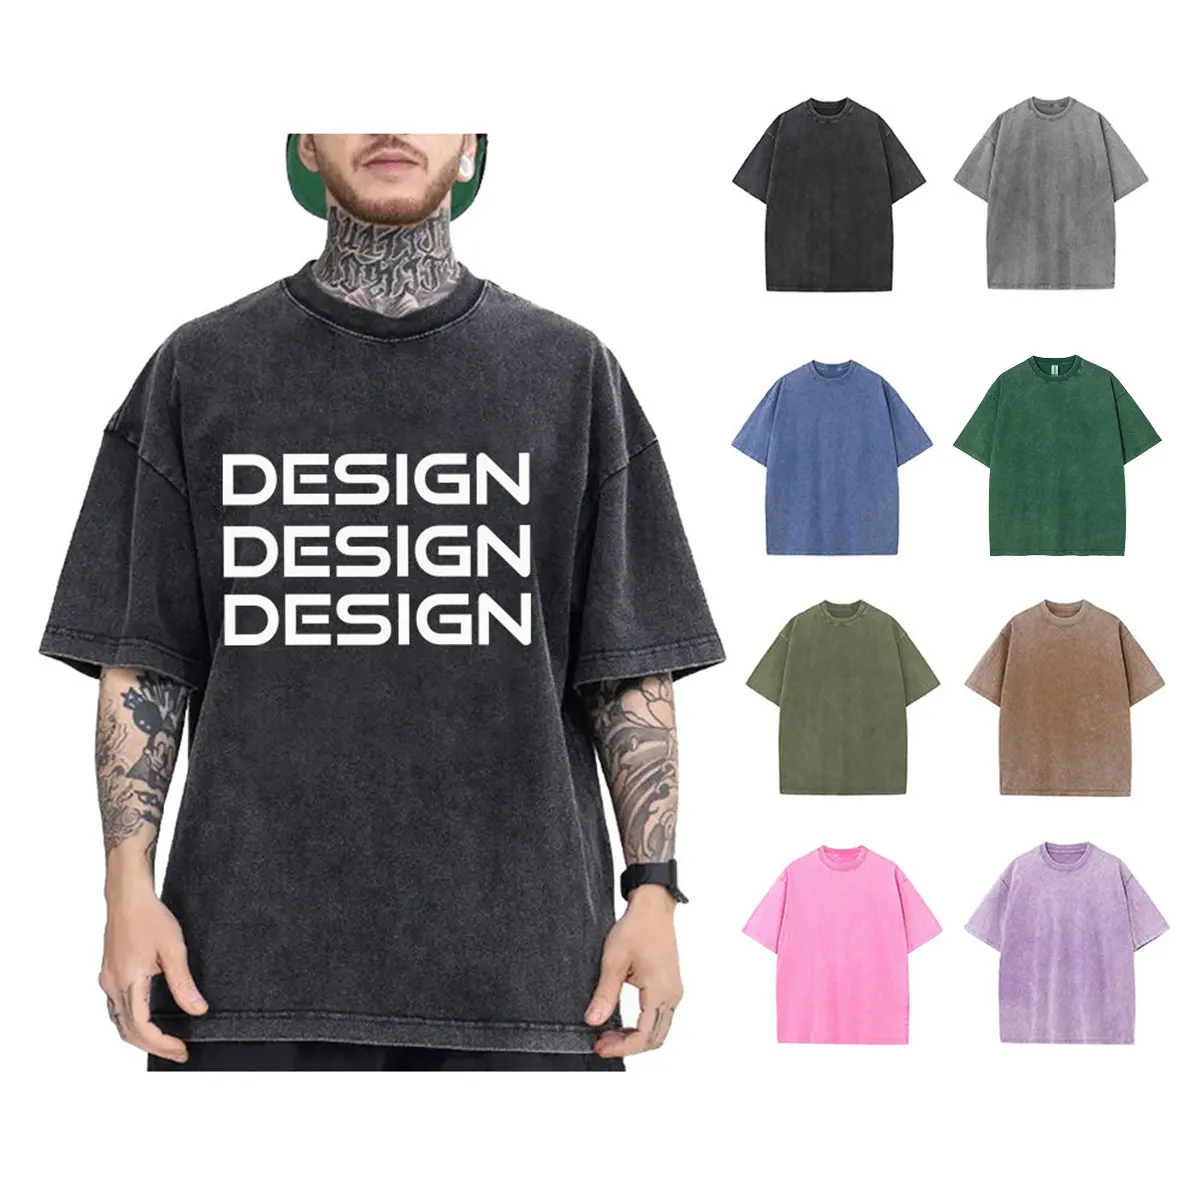 Özel kesim ve dikmek T Shirt % 100% pamuk grafik baskı ağır ağartıcı asit yıkanmış Vintage artı boyutu erkekler boy Tshirt